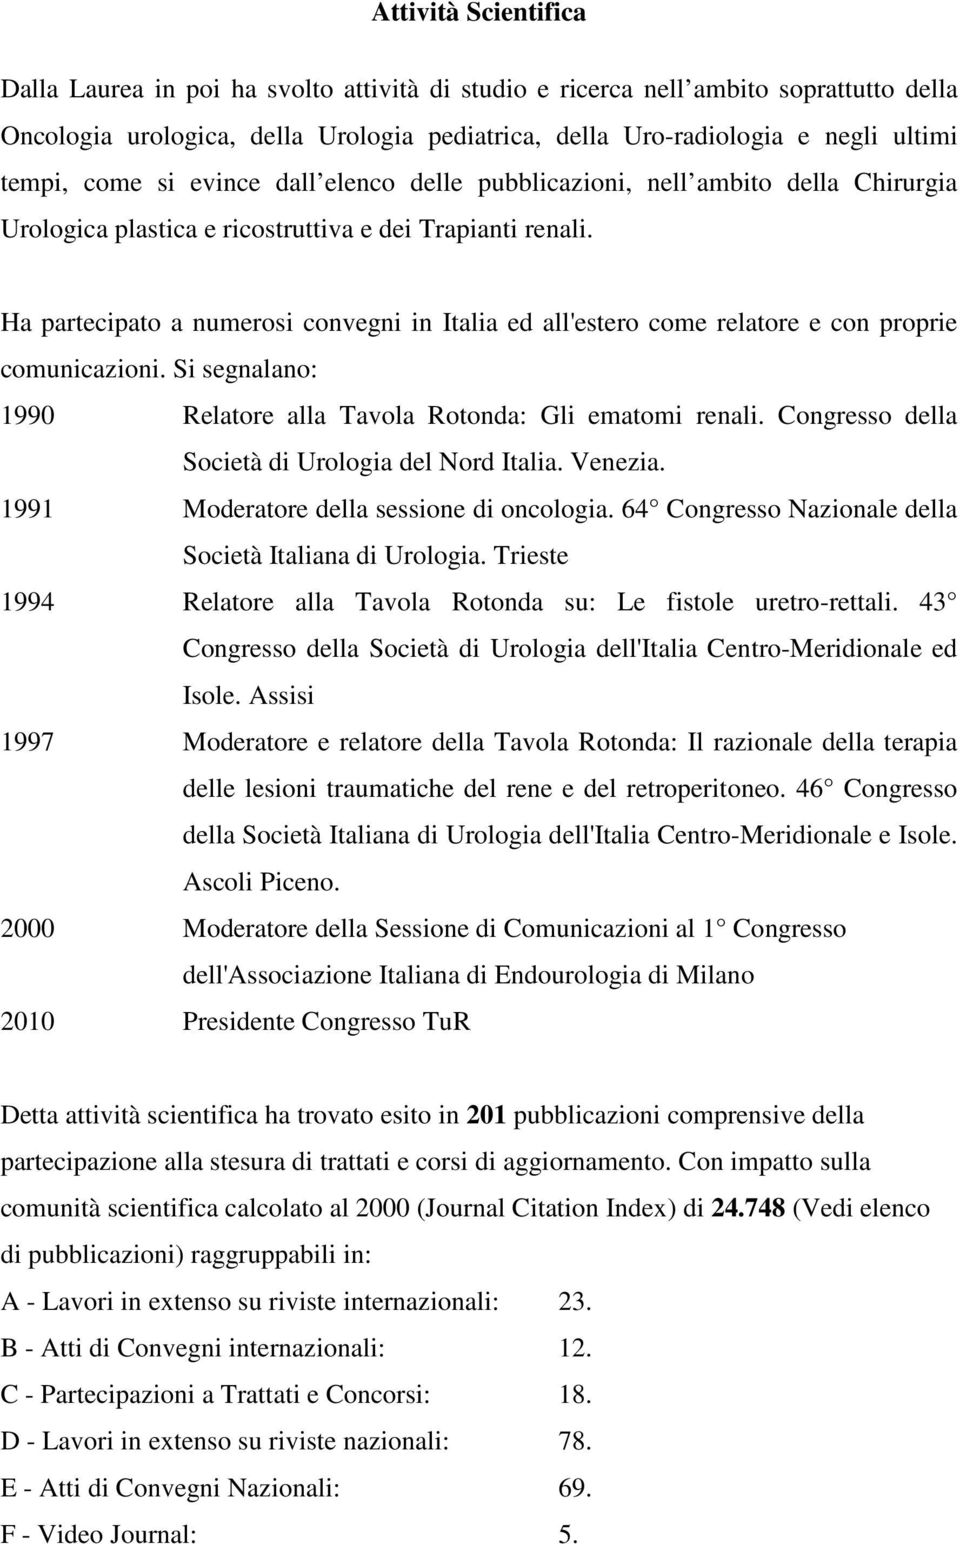 Ha partecipato a numerosi convegni in Italia ed all'estero come relatore e con proprie comunicazioni. Si segnalano: 1990 Relatore alla Tavola Rotonda: Gli ematomi renali.